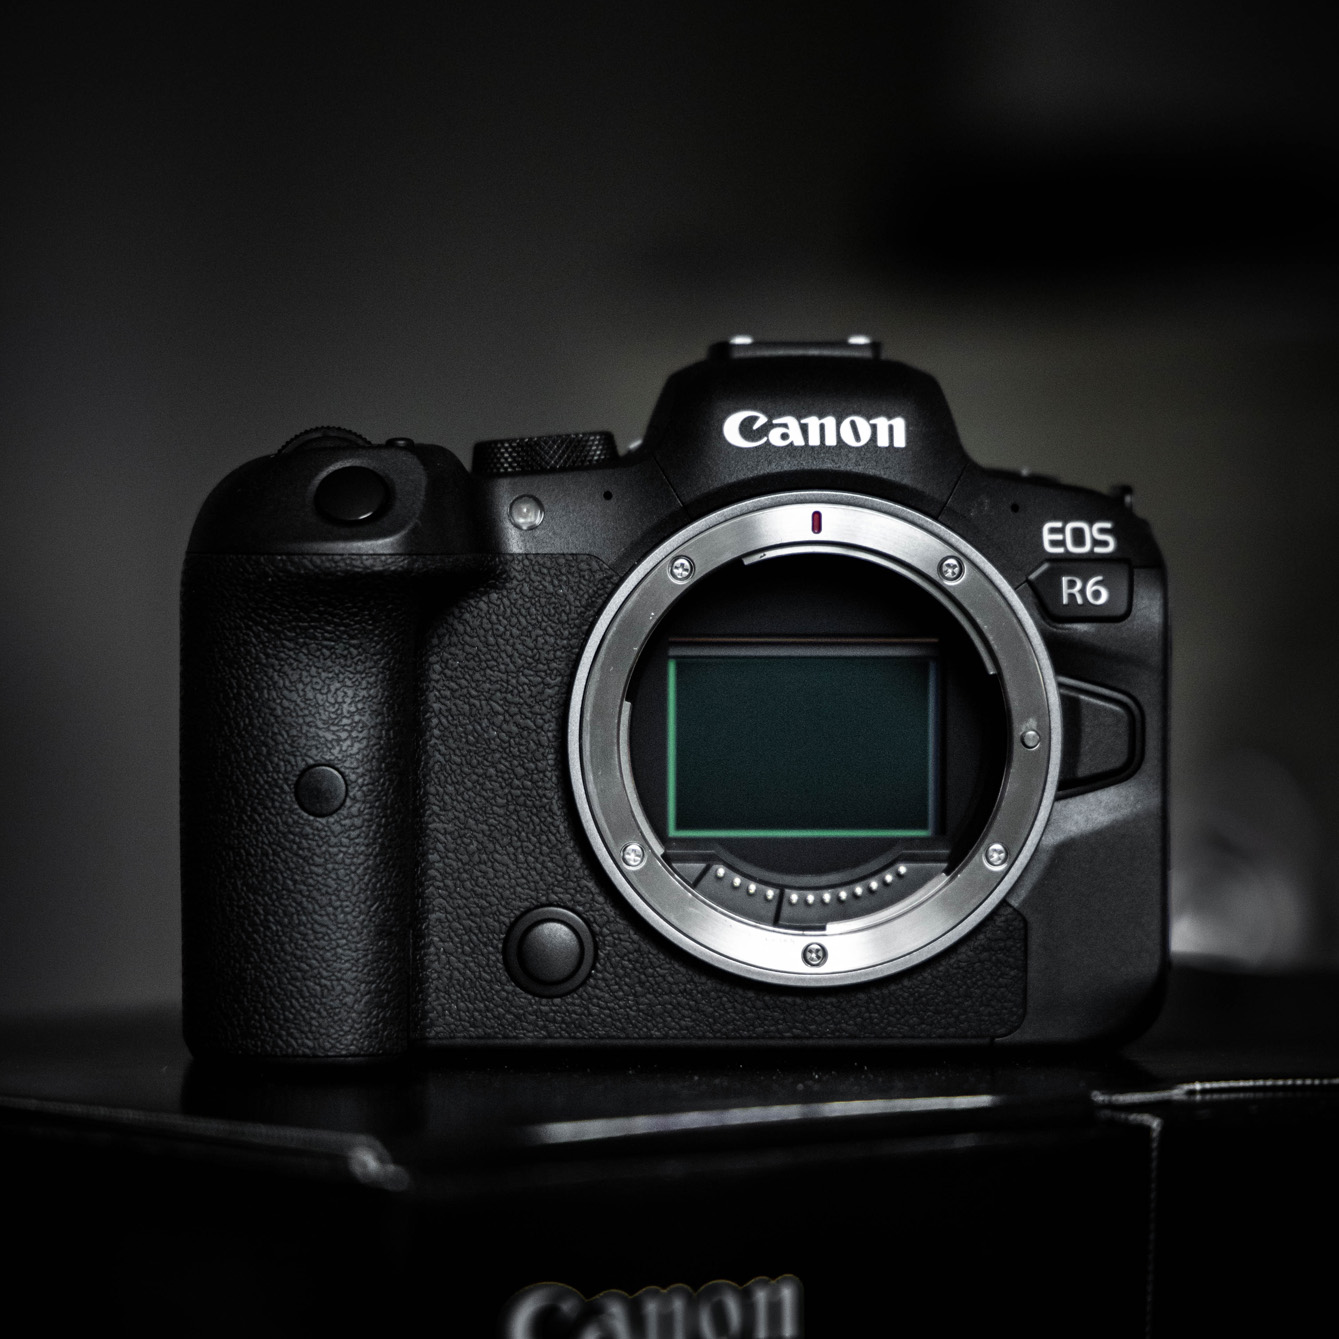 Appareils photo avec objectifs interchangeables — Boutique Canon